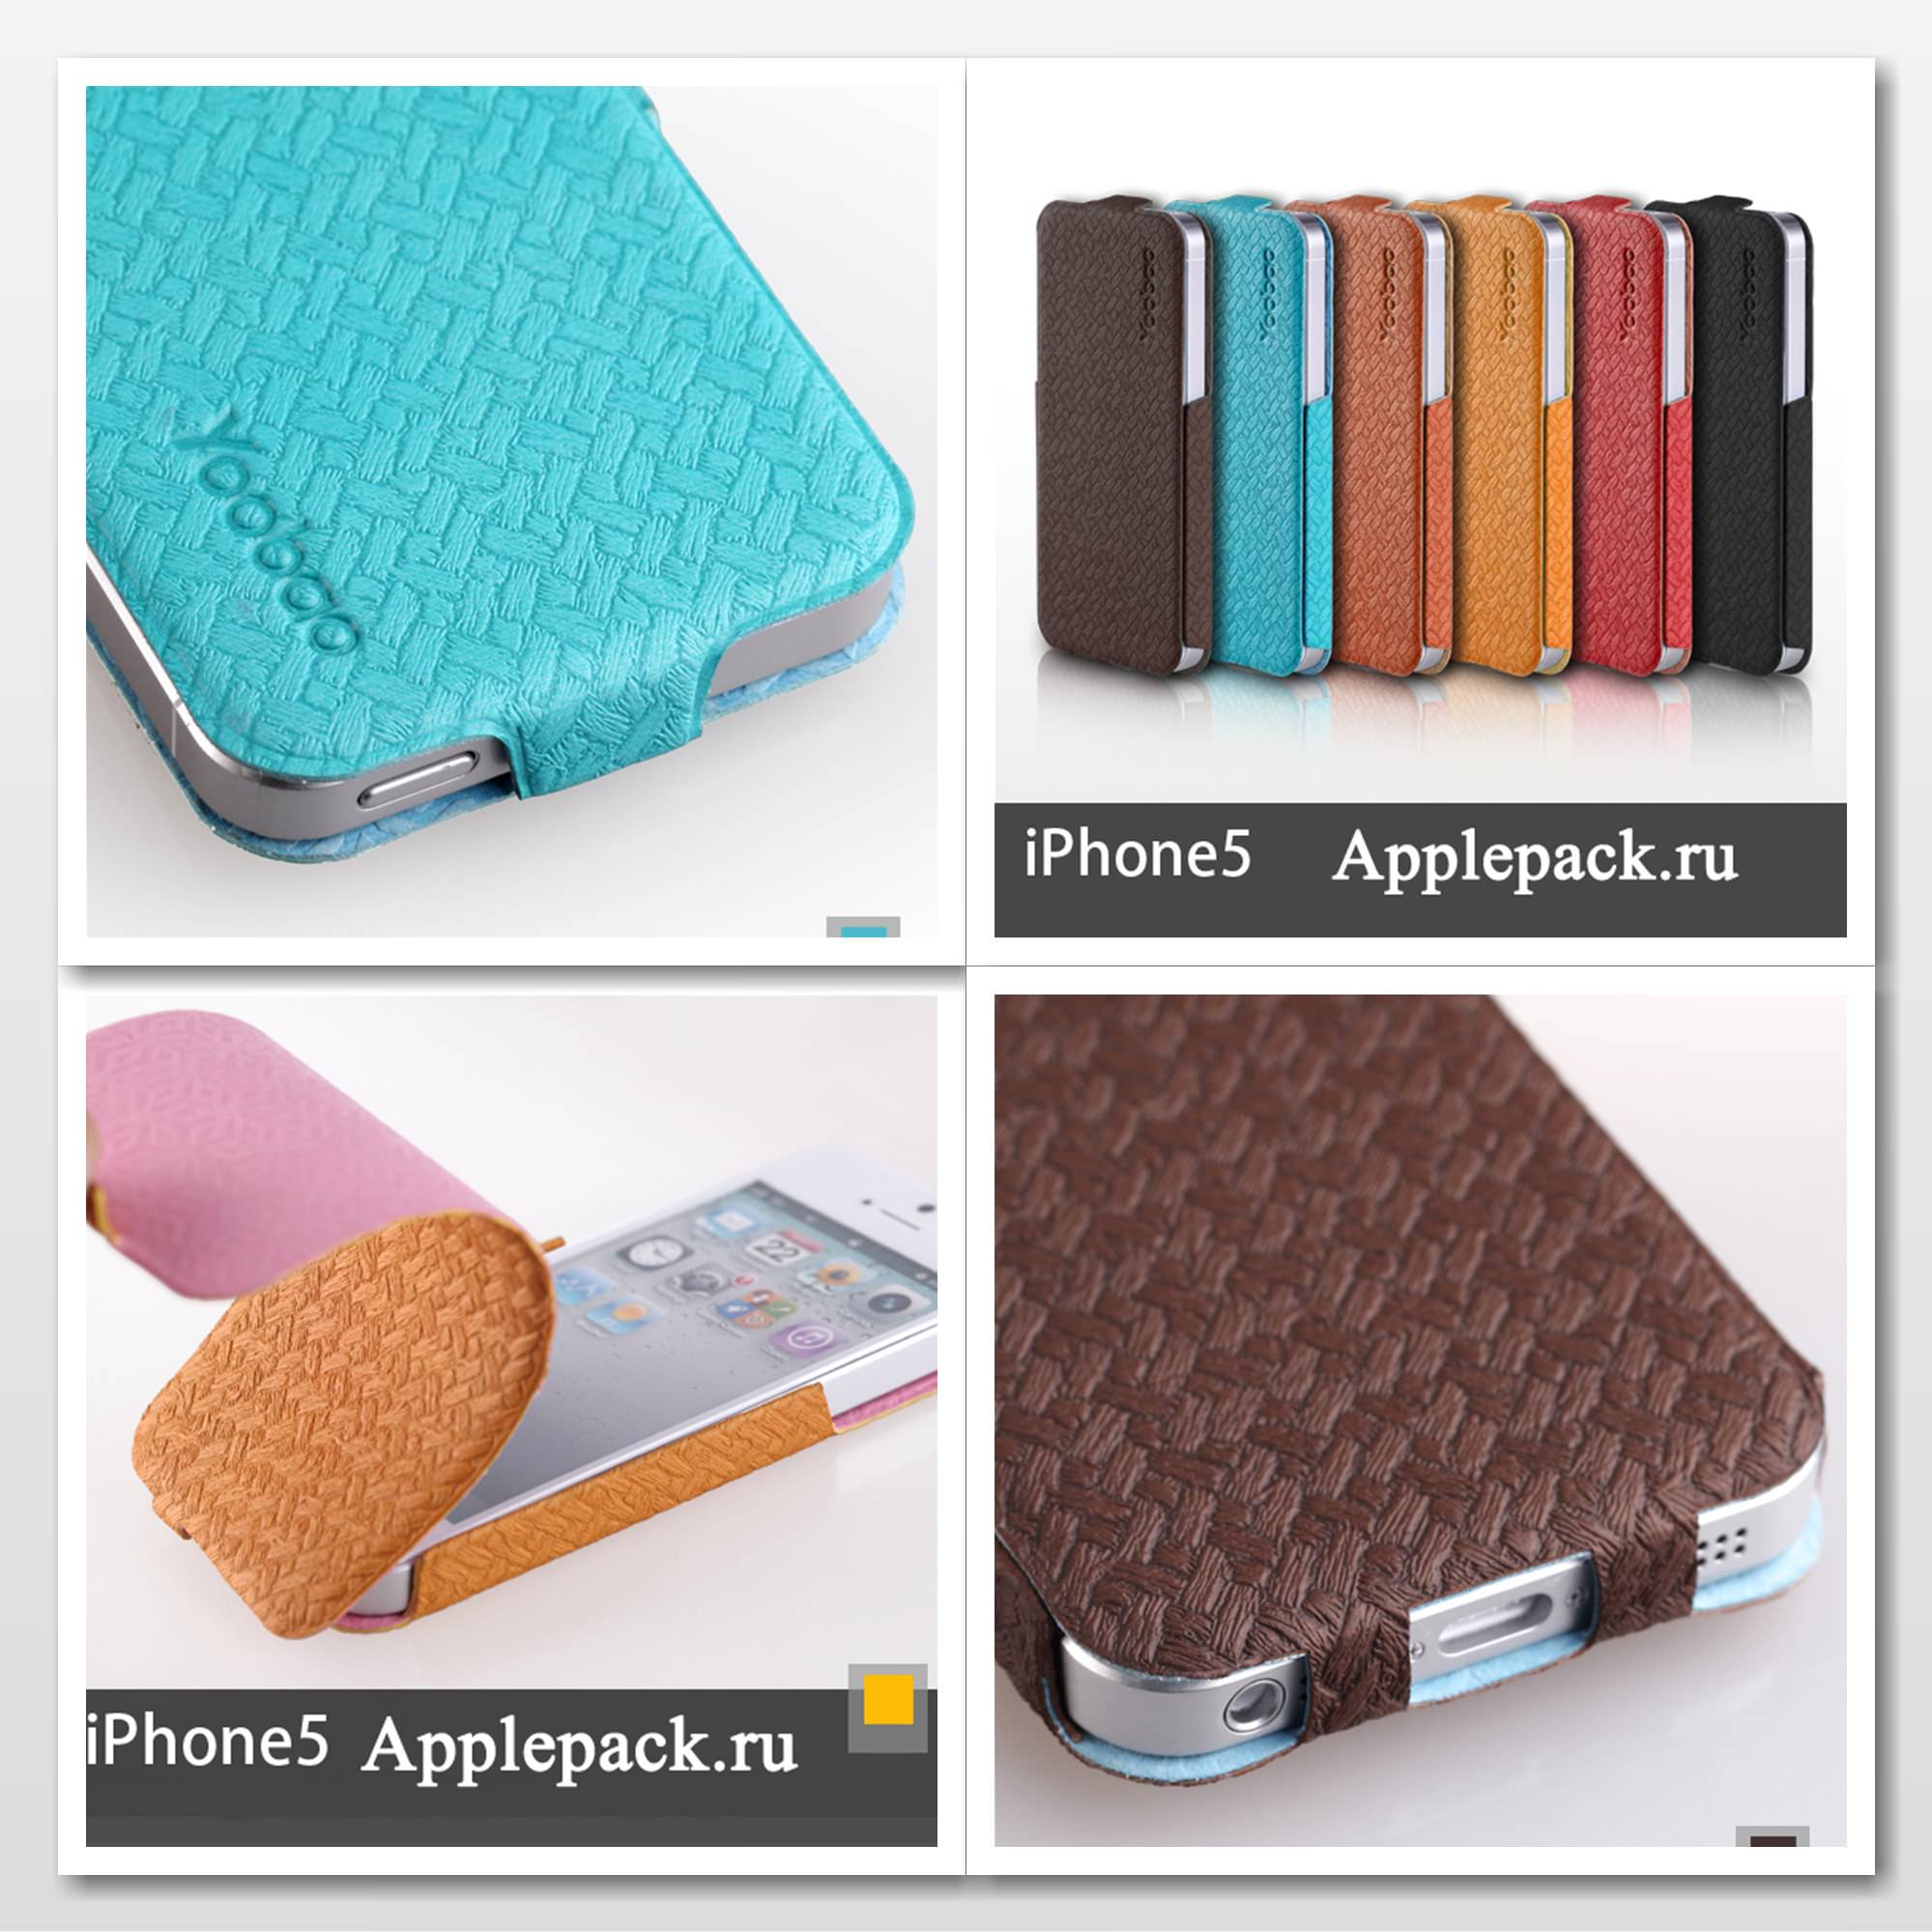 Yoobao Fashion Leather Case iPhone 5 Applepack.ru